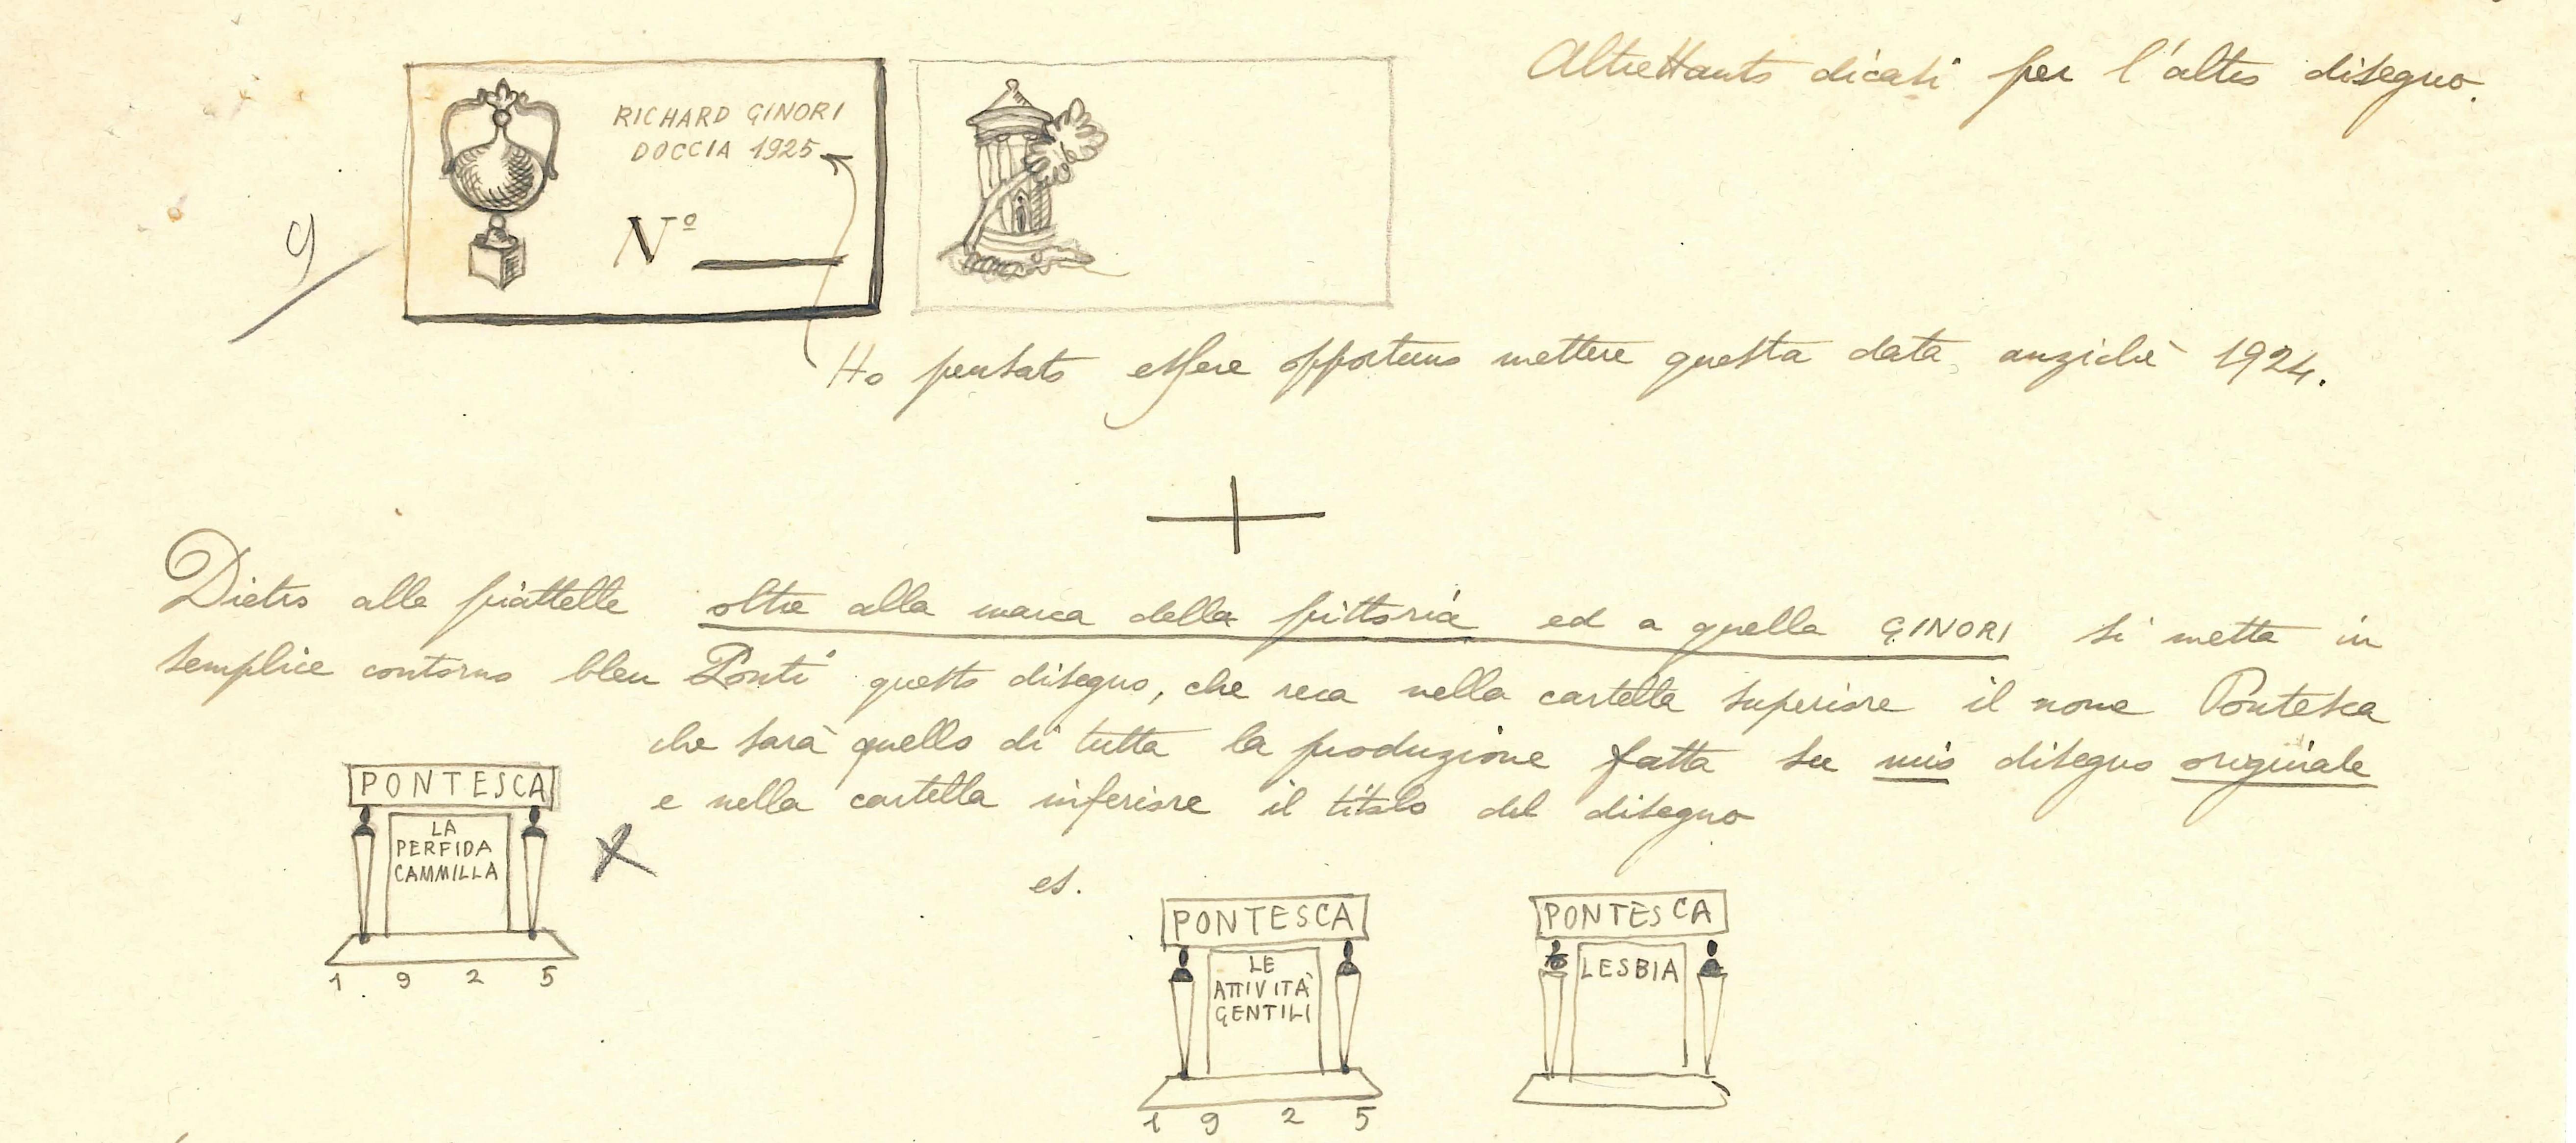 Lettera manoscritta con disegni e testi che spiegano quali loghi usare